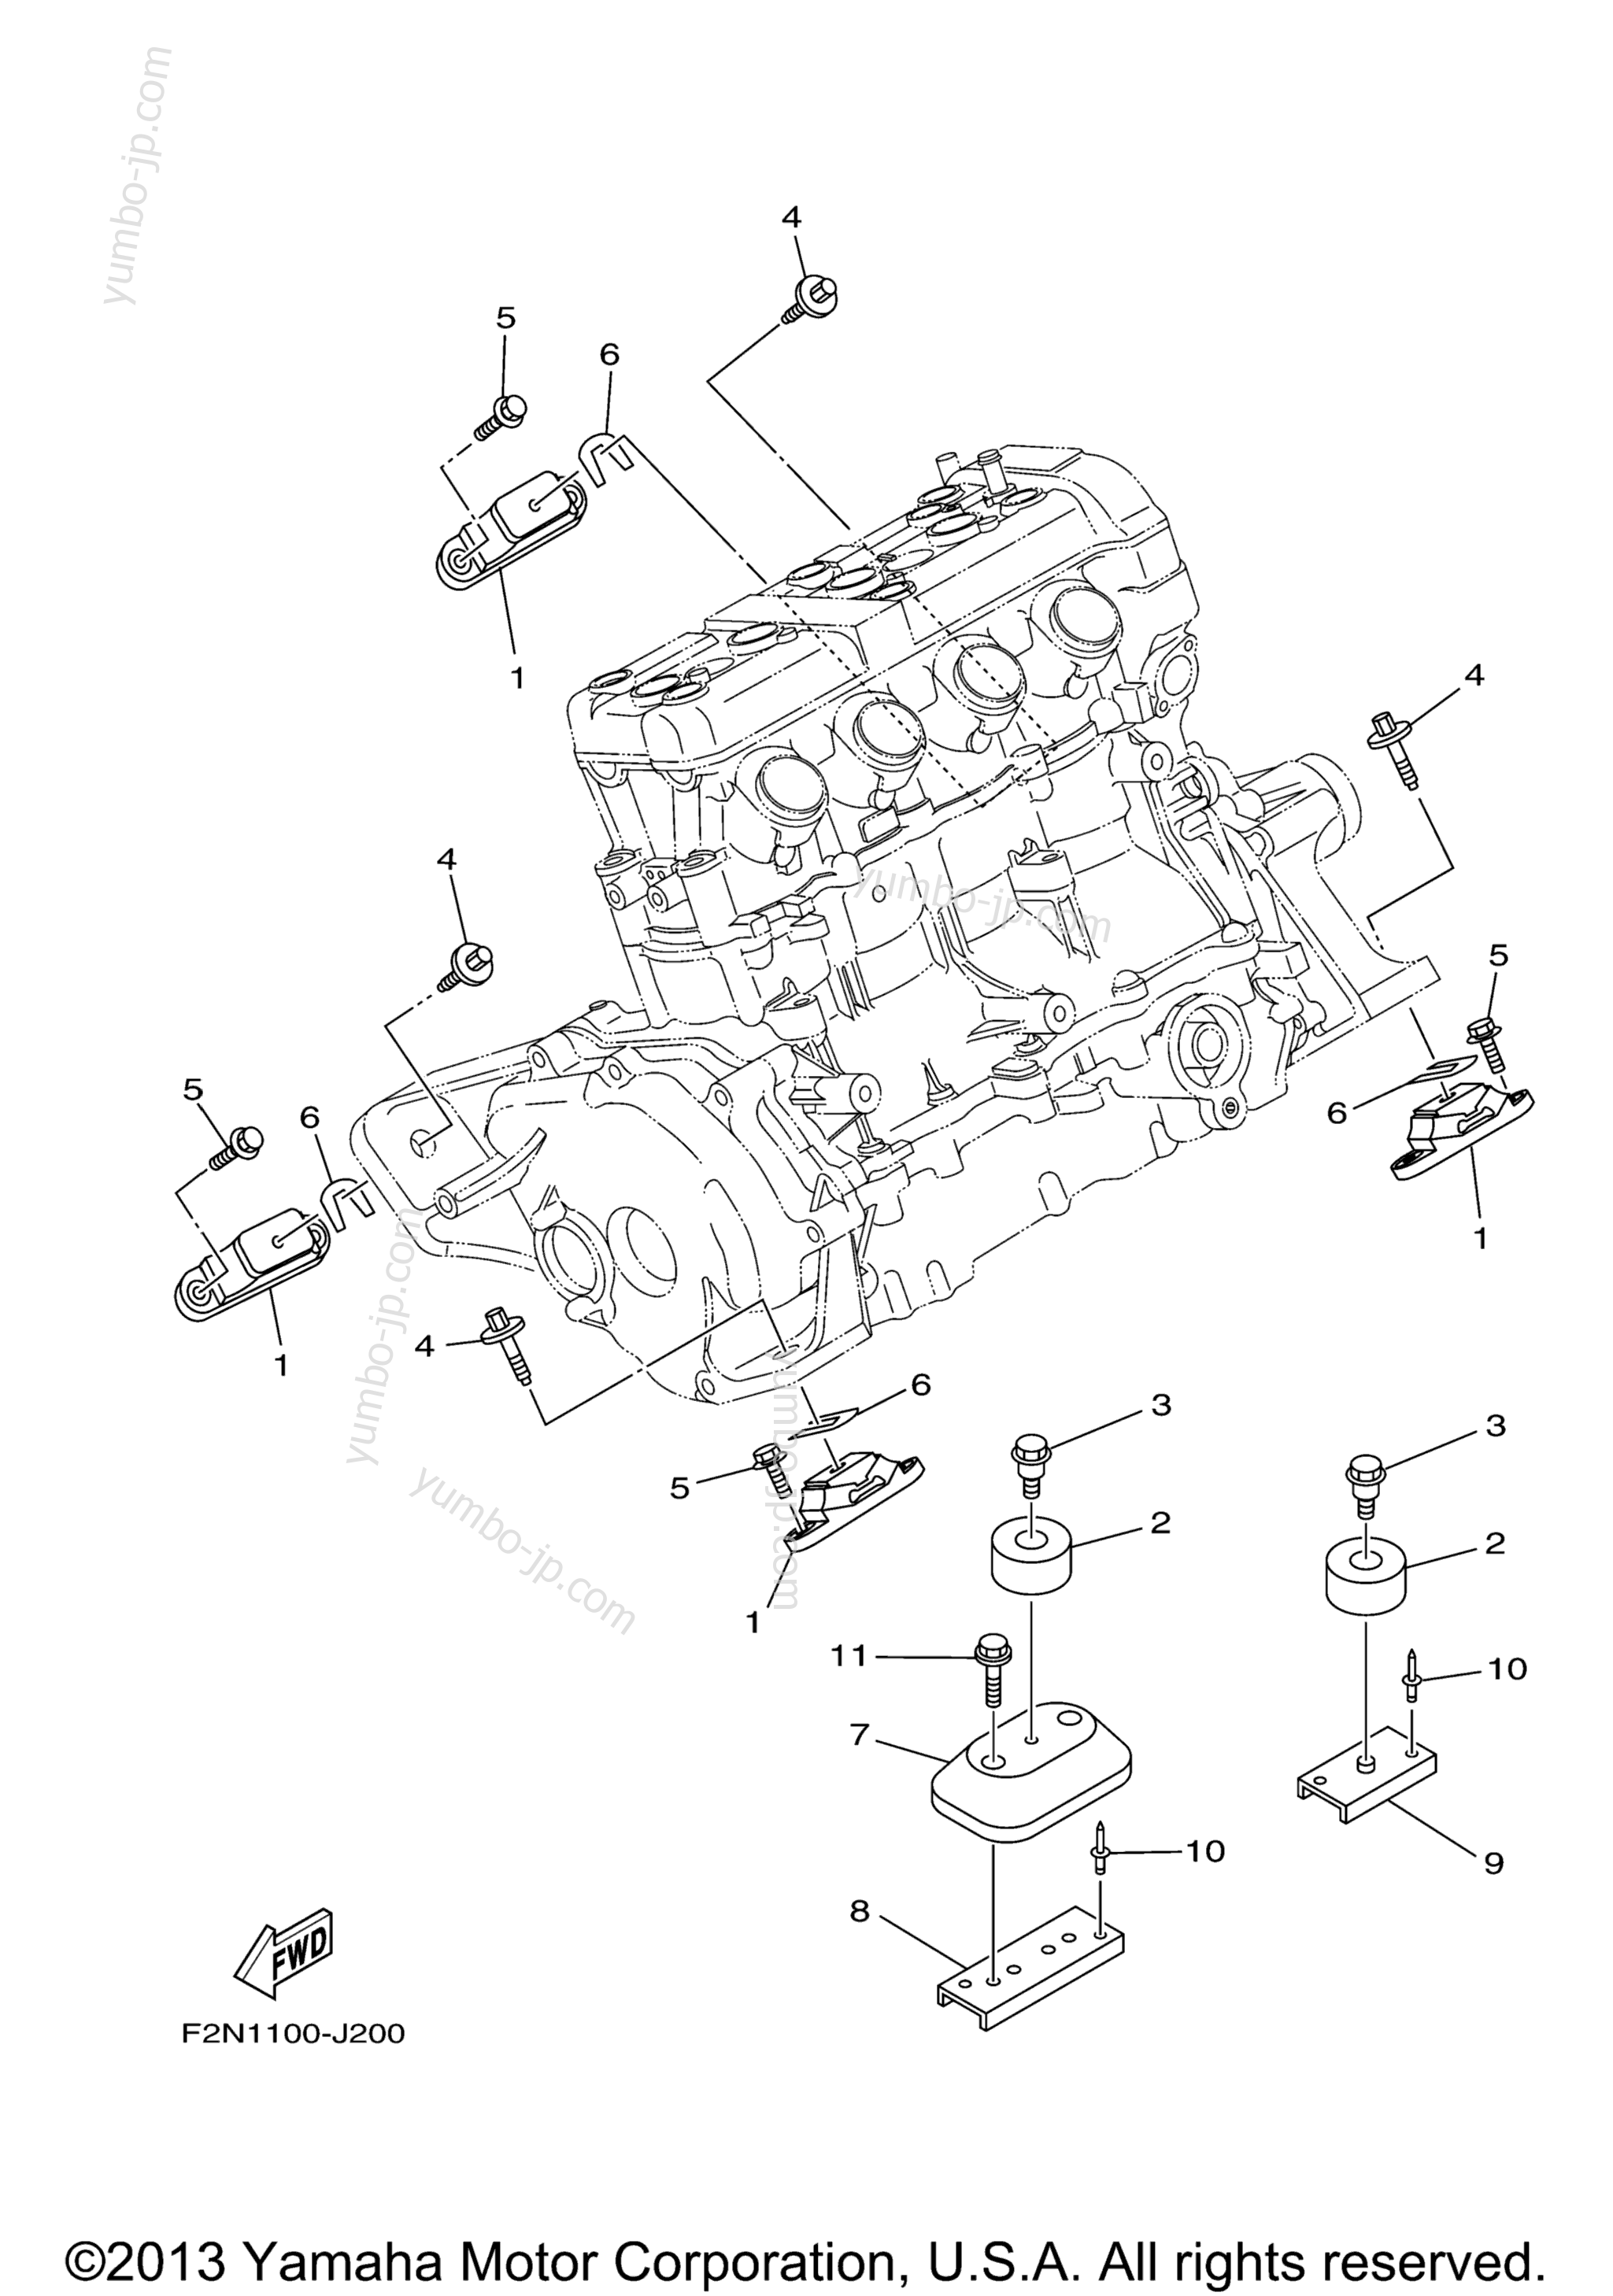 ENGINE MOUNT для гидроциклов YAMAHA VX CRUISER (VX1100AL) 2012 г.